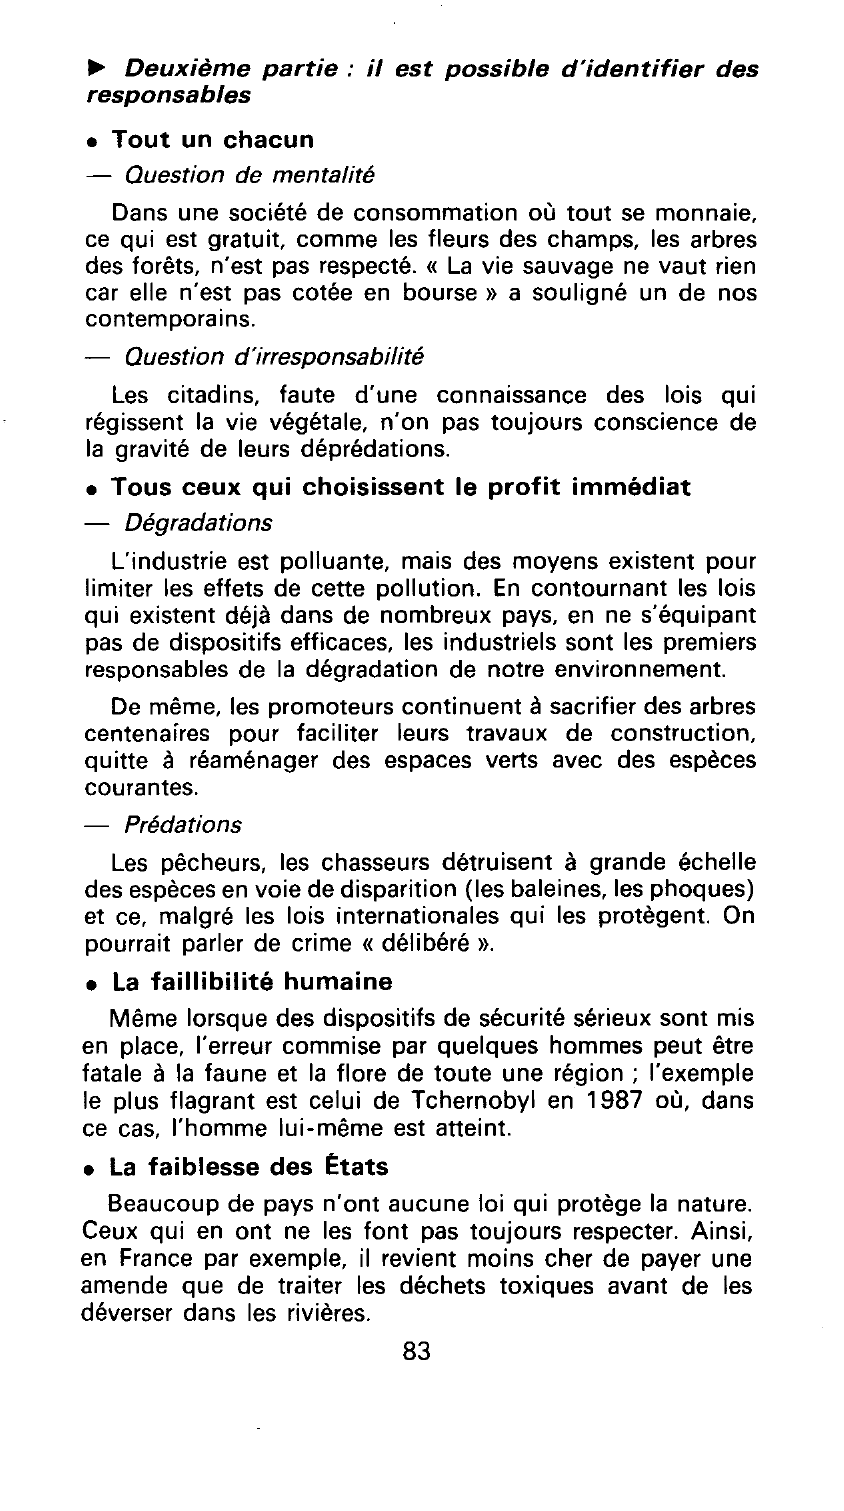 Prévisualisation du document « Ils font la guerre à la nature» Jacques Prévert.